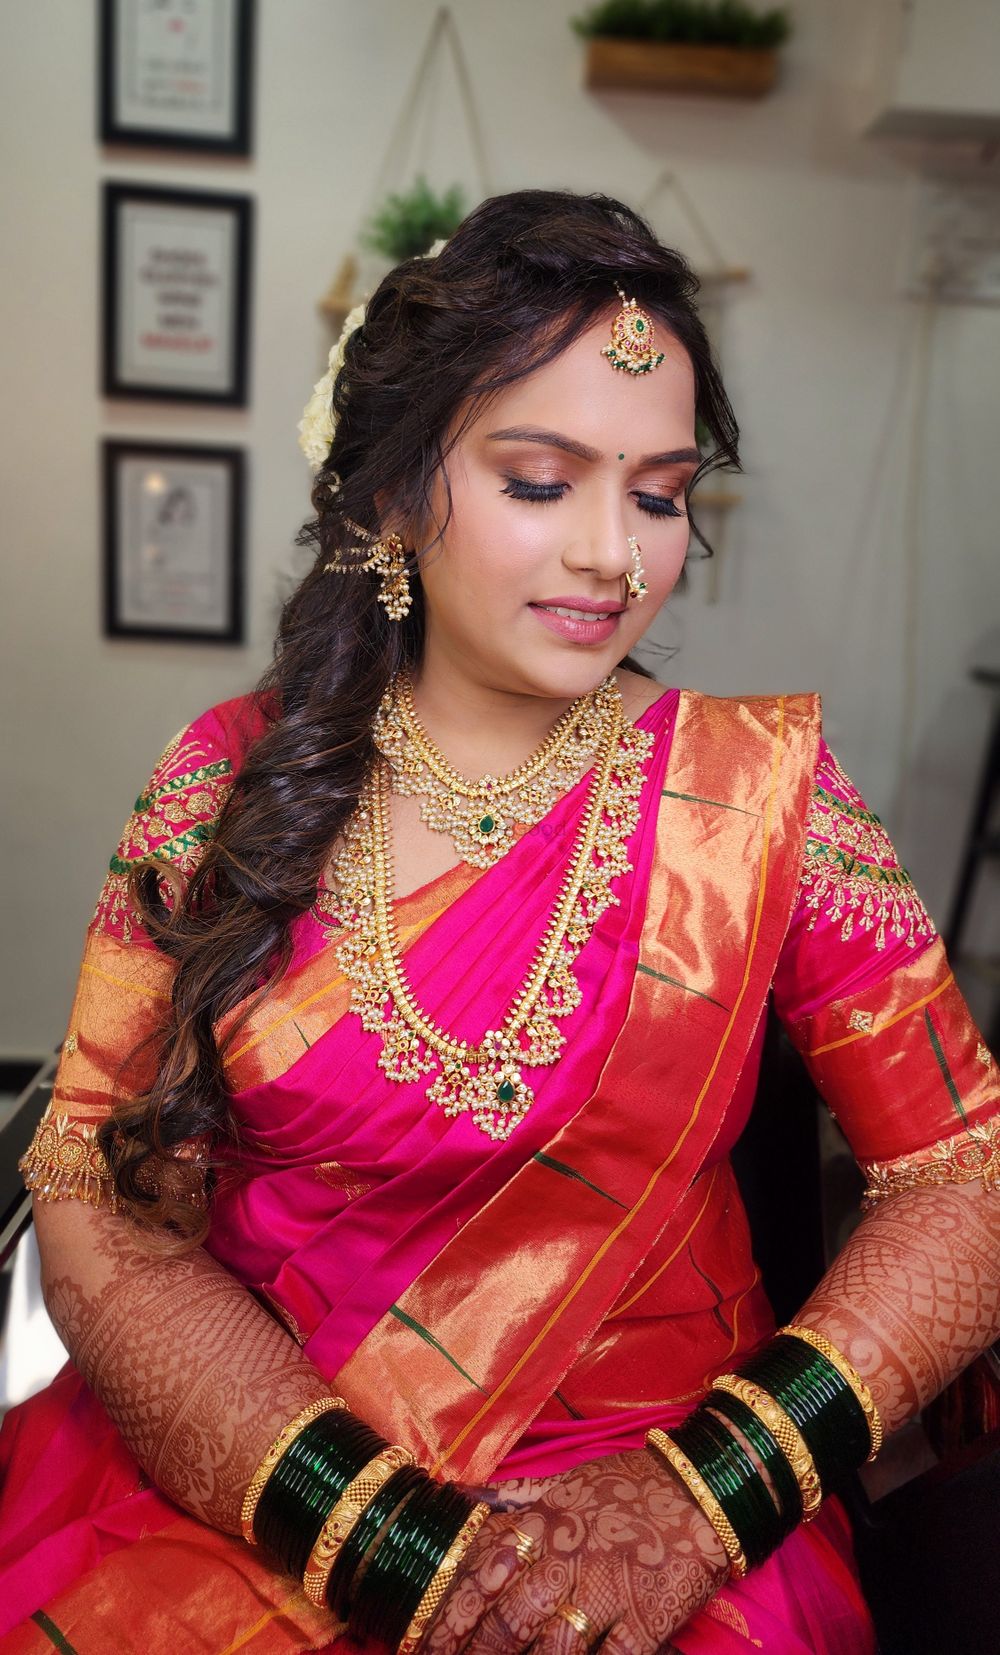 Photo From Maharashtrian Bride Sugandha Gawade - By Wow - Makeup Artist Reena